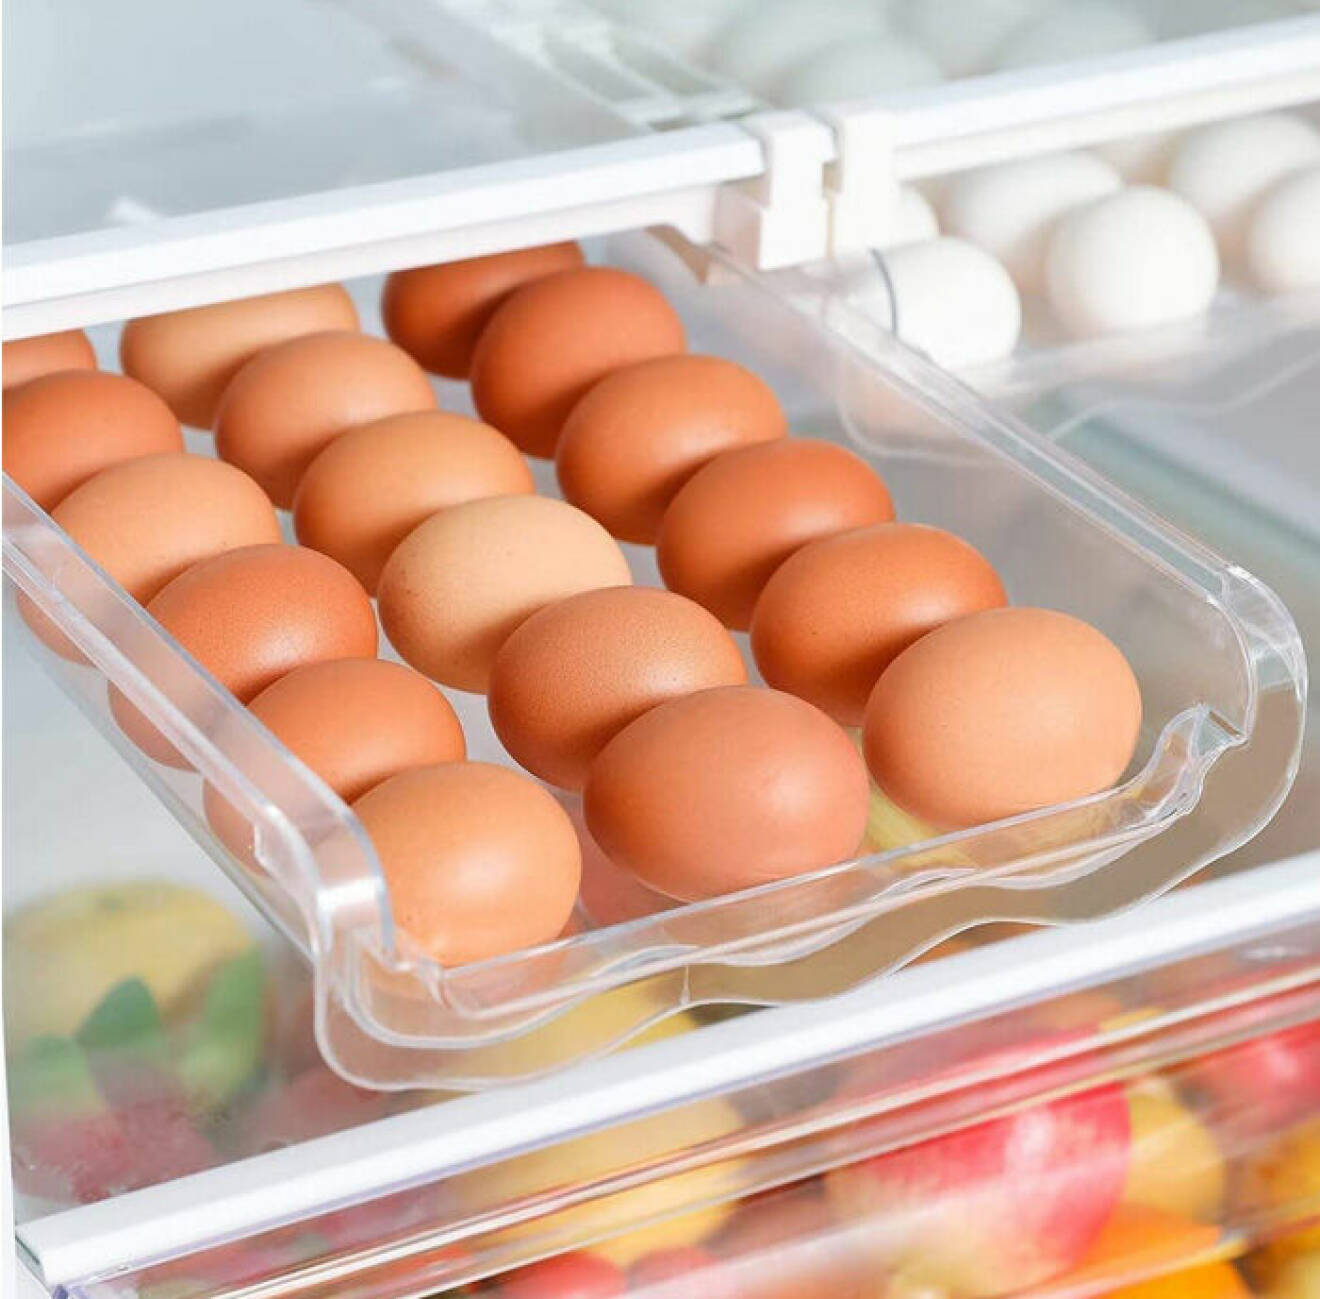 organisera kylskåp – genomskinlig utdragbar ägghållare till kylskåp